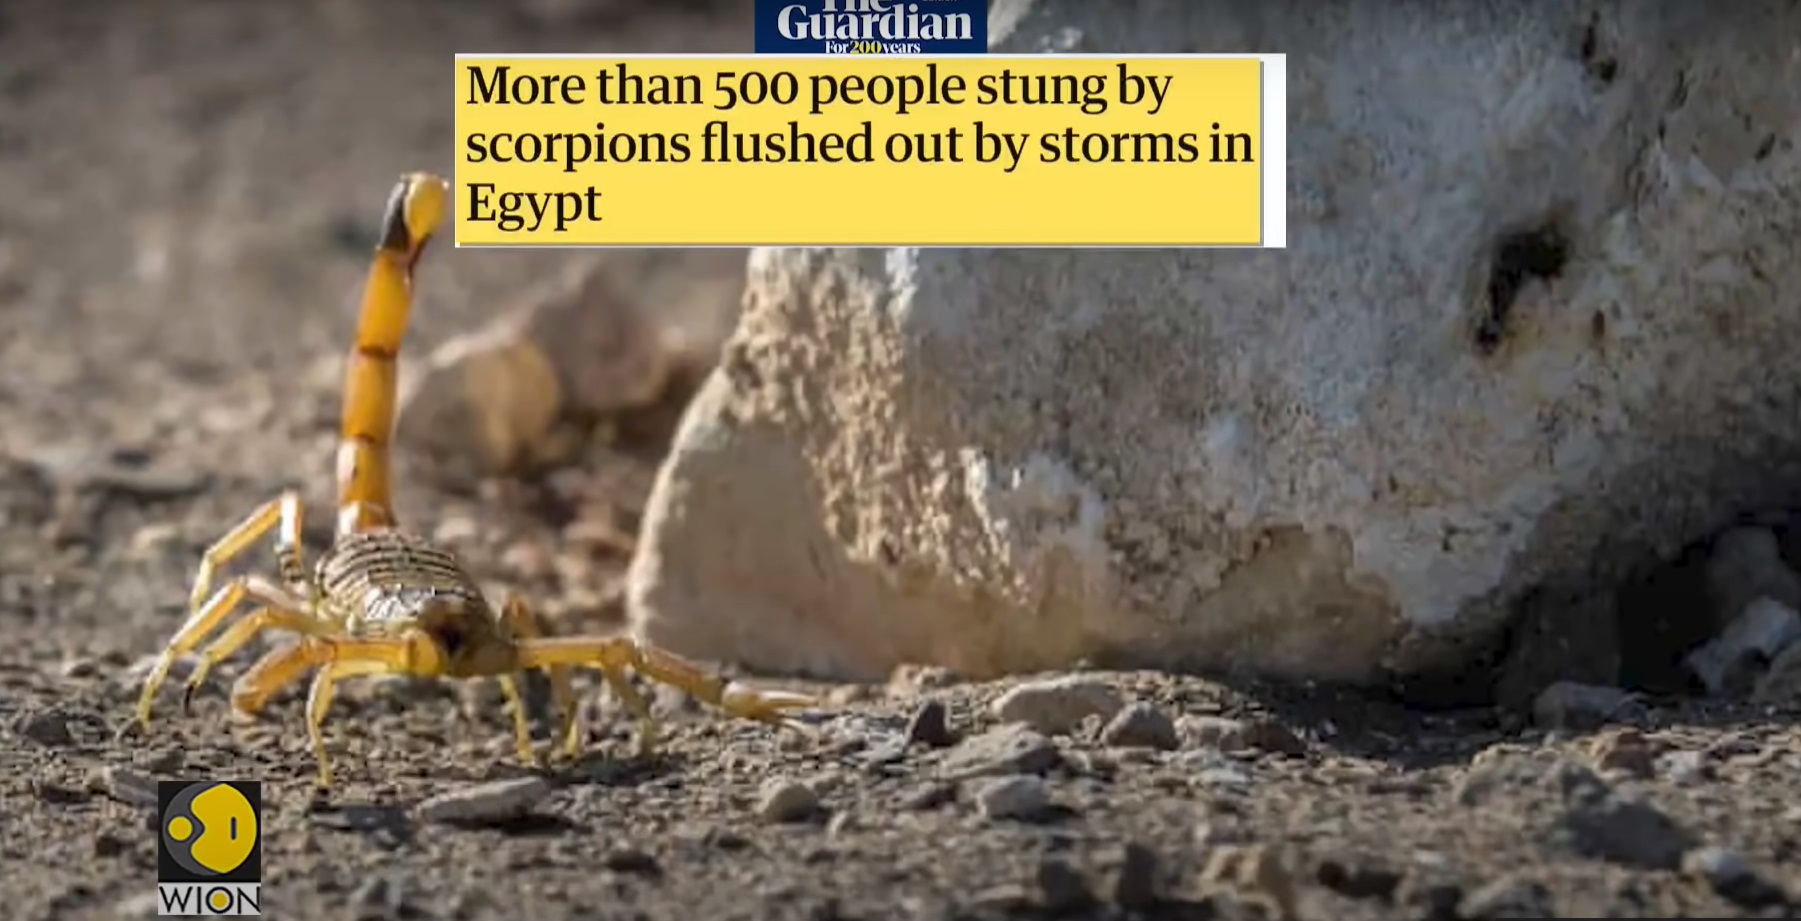 Αίγυπτος: Εισβολή σκορπιών- 3 νεκροί - 500 άτομα στο νοσοκομείο!(βίντεο)